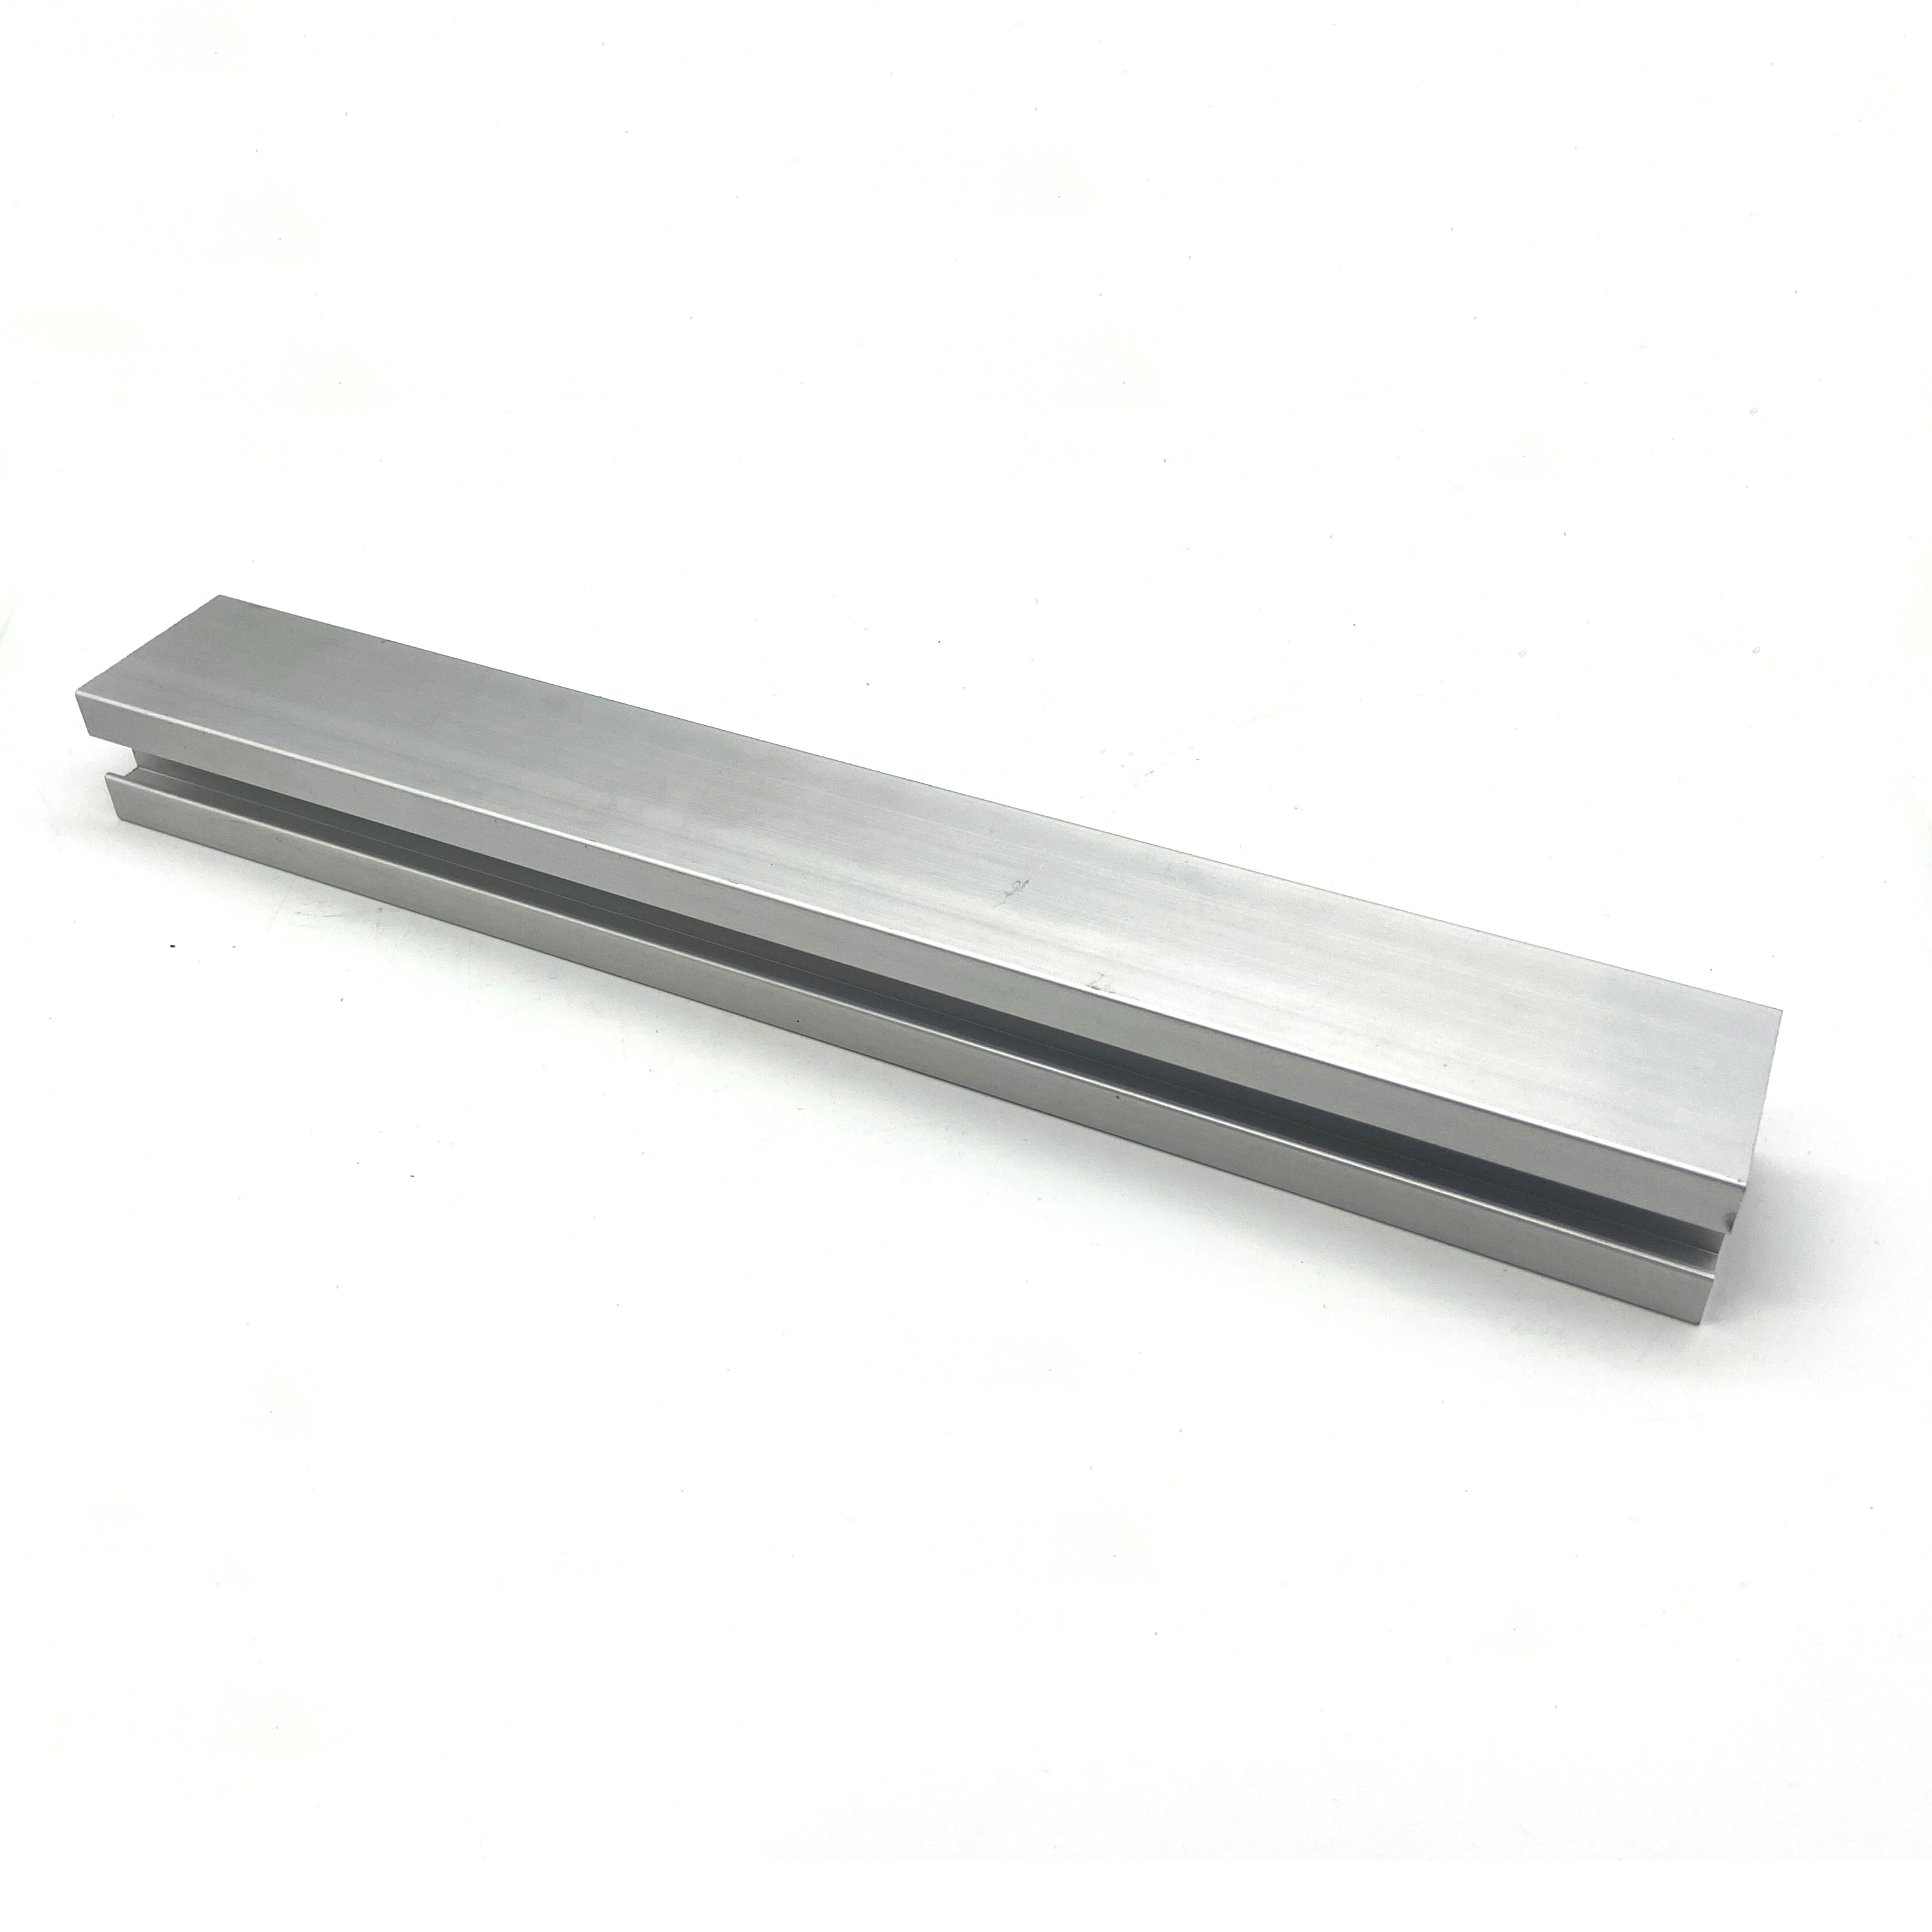 60 Series T-Slot Solar System Aluminium Construction Profiles Aluminium Extrusion Profile Bracket